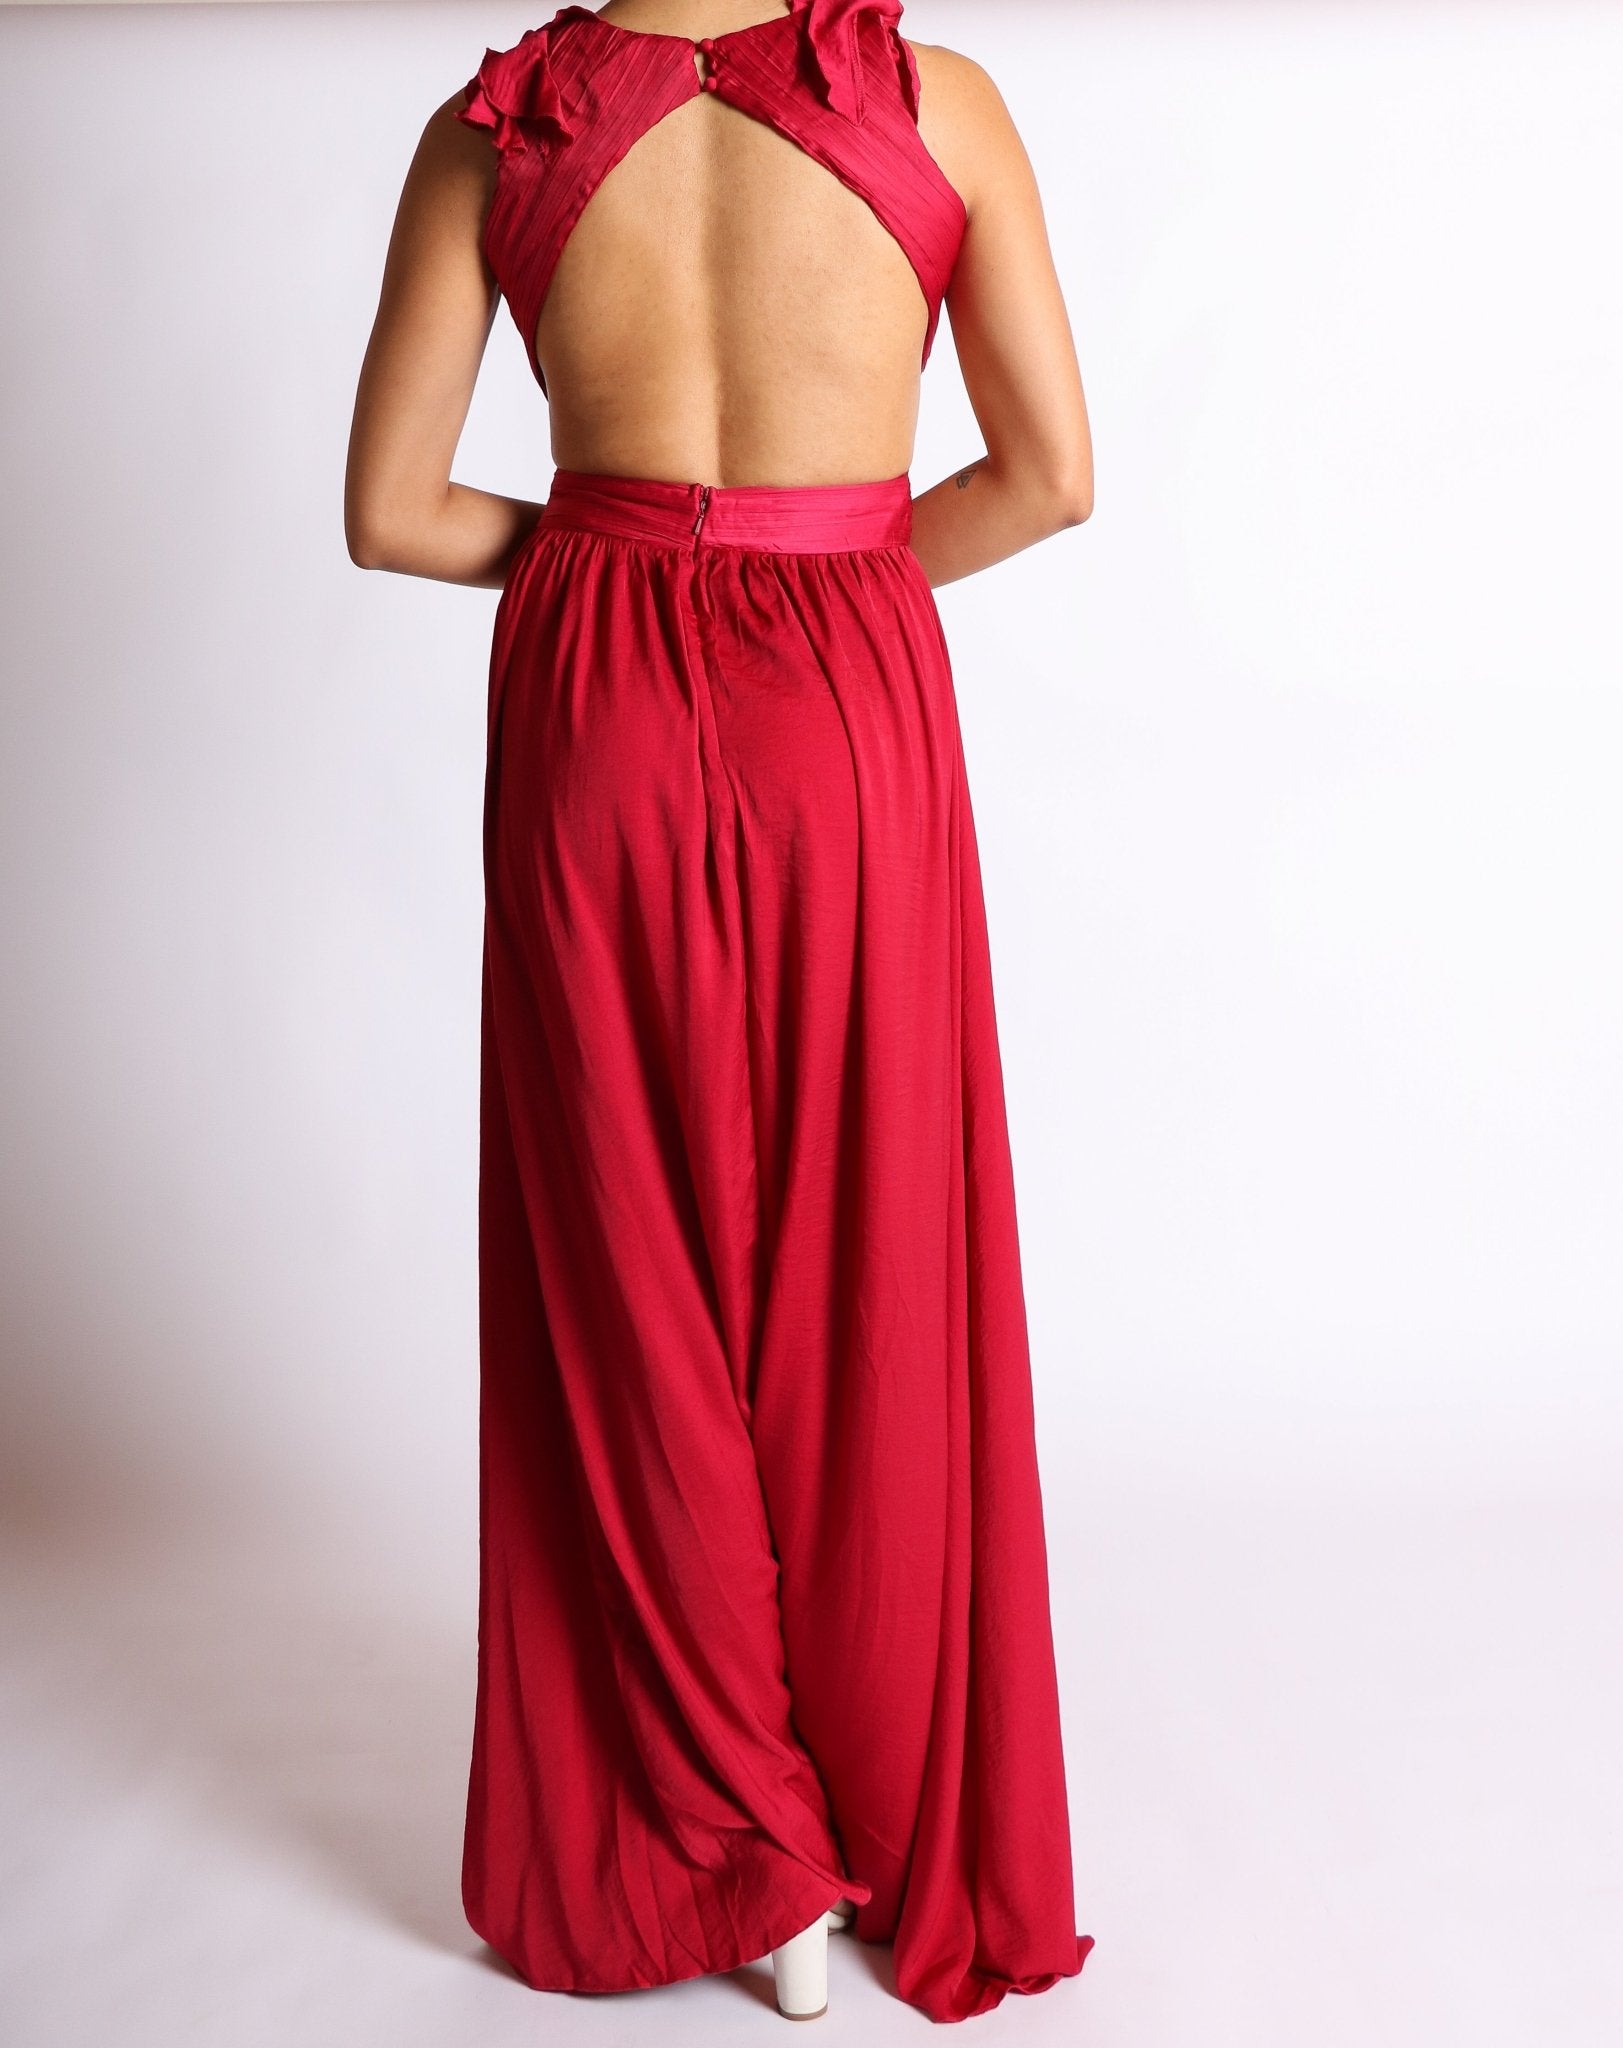 Emory - rojo - Cindel vestidos maxi, midi, mini, para toda ocasion, largos, de fiesta, de boda